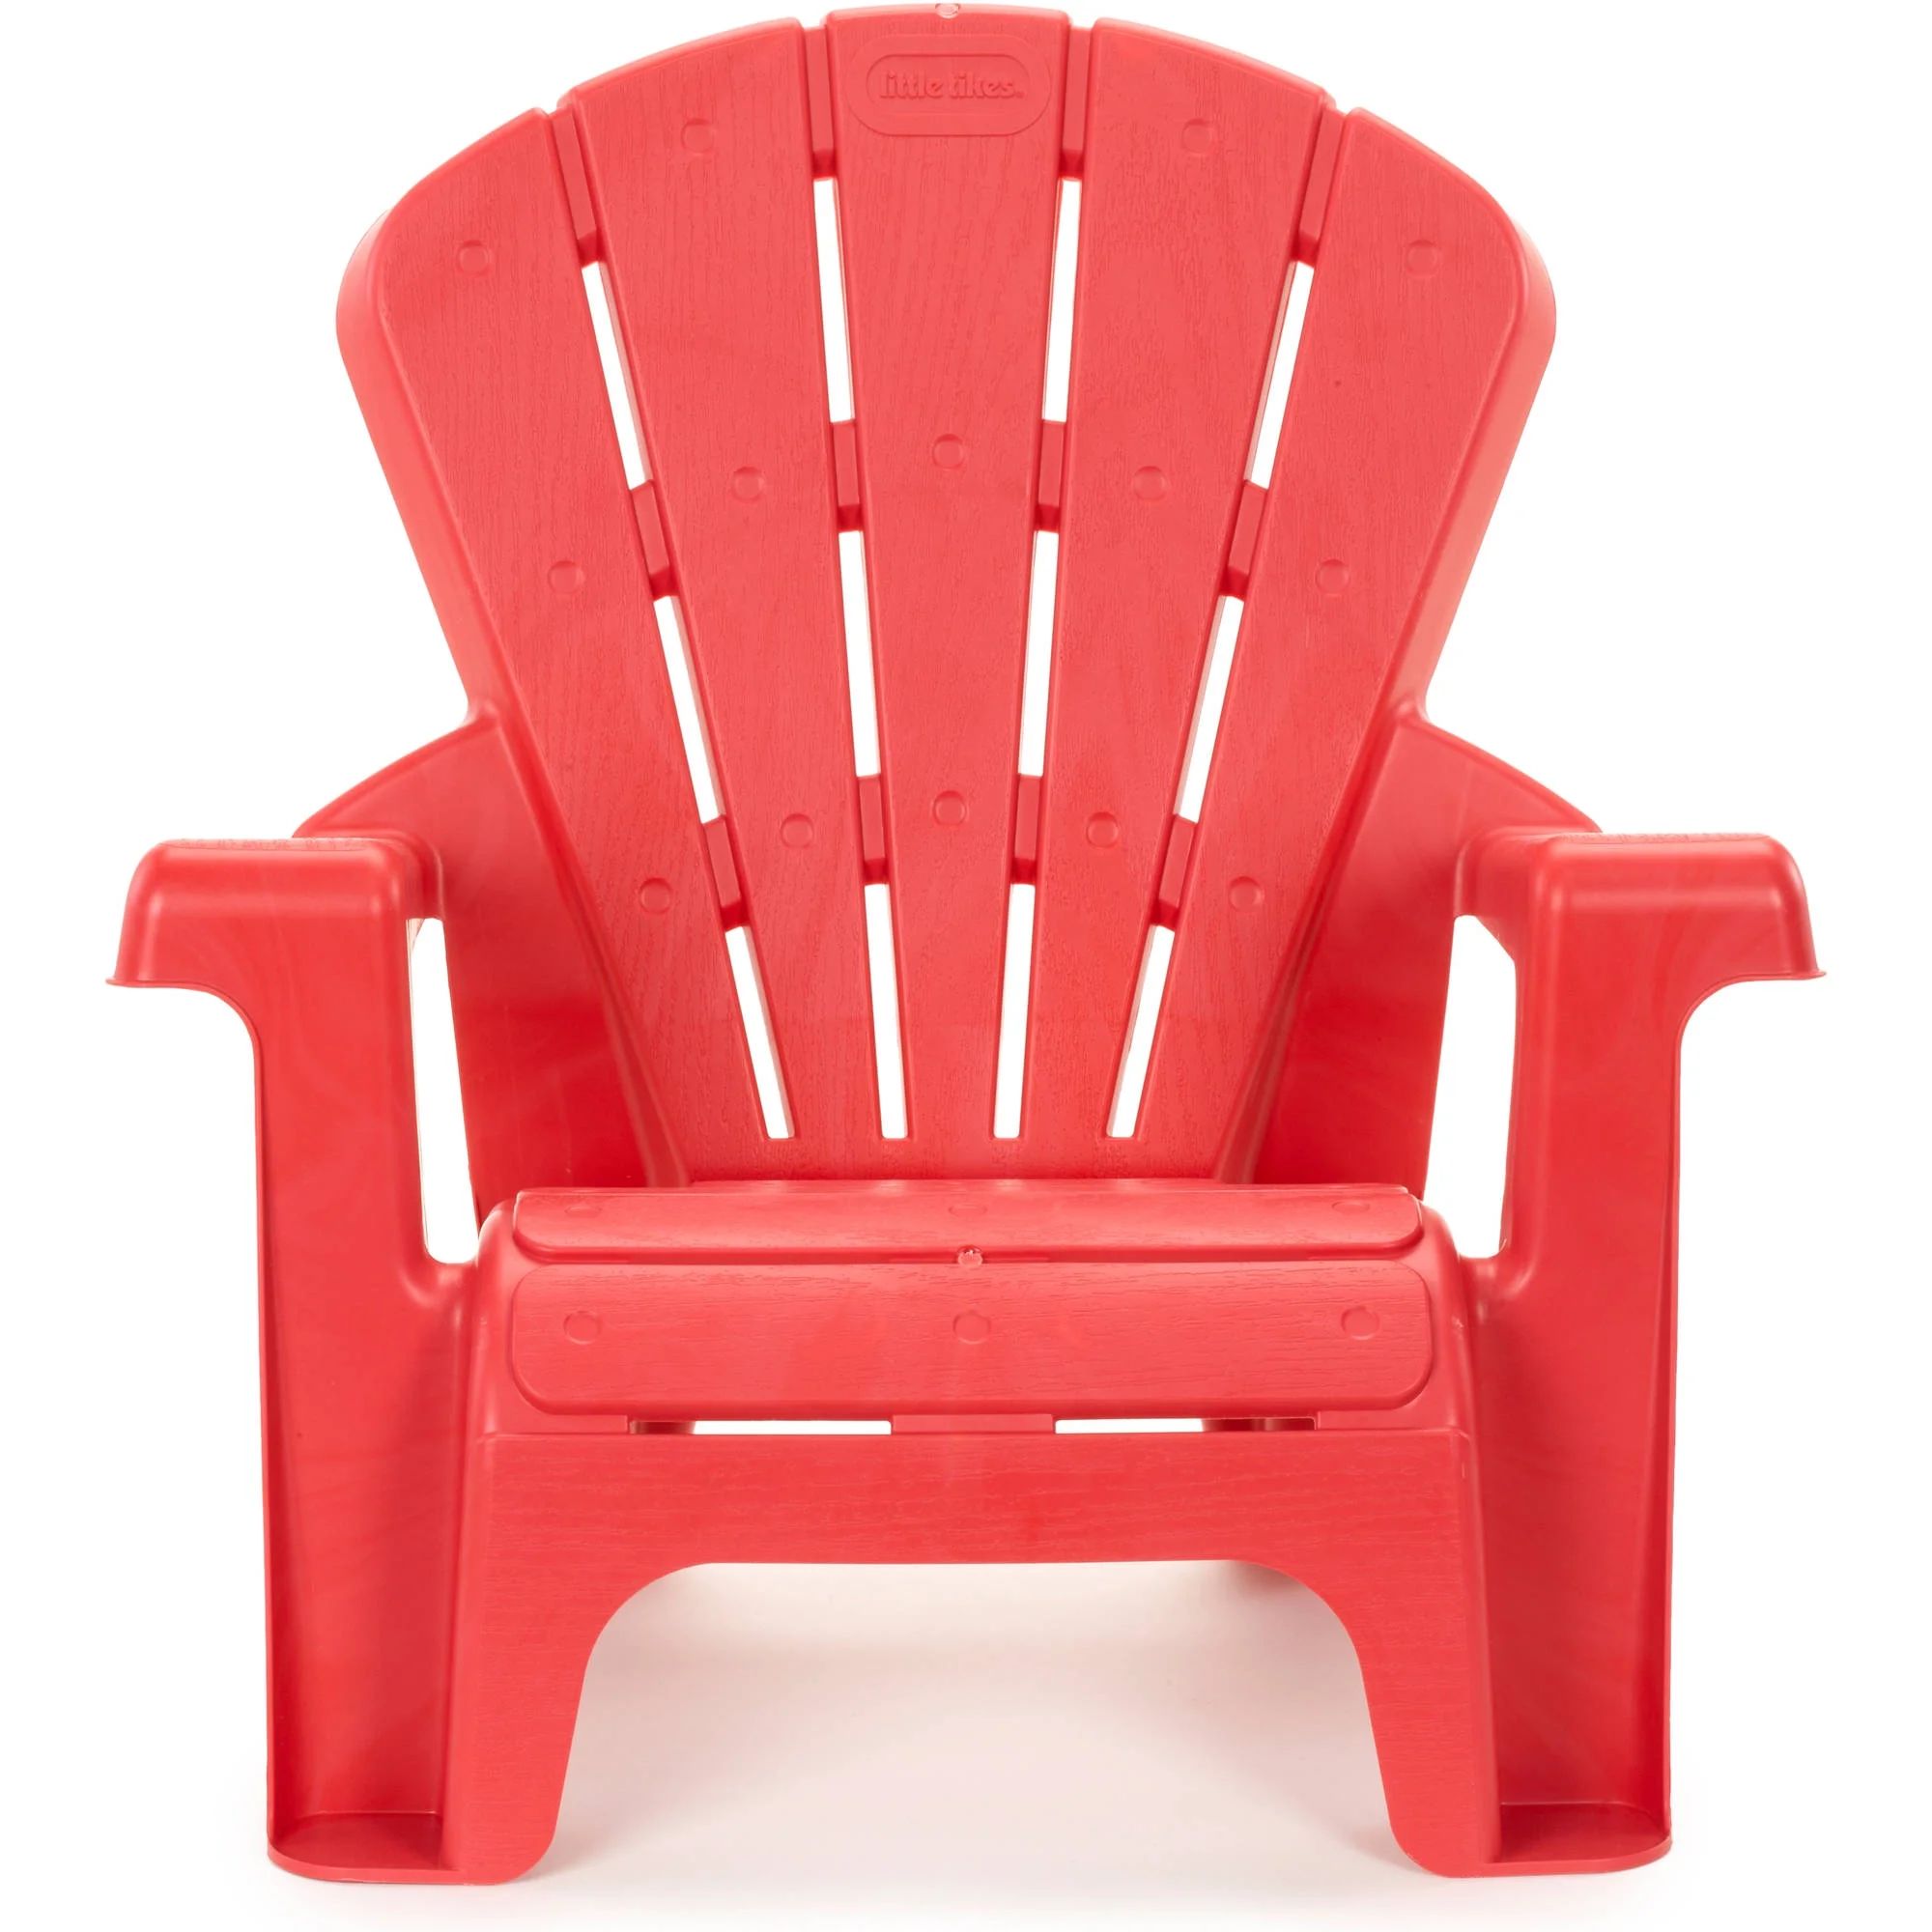 Little Tikes Garden Chair, Red | Walmart (US)